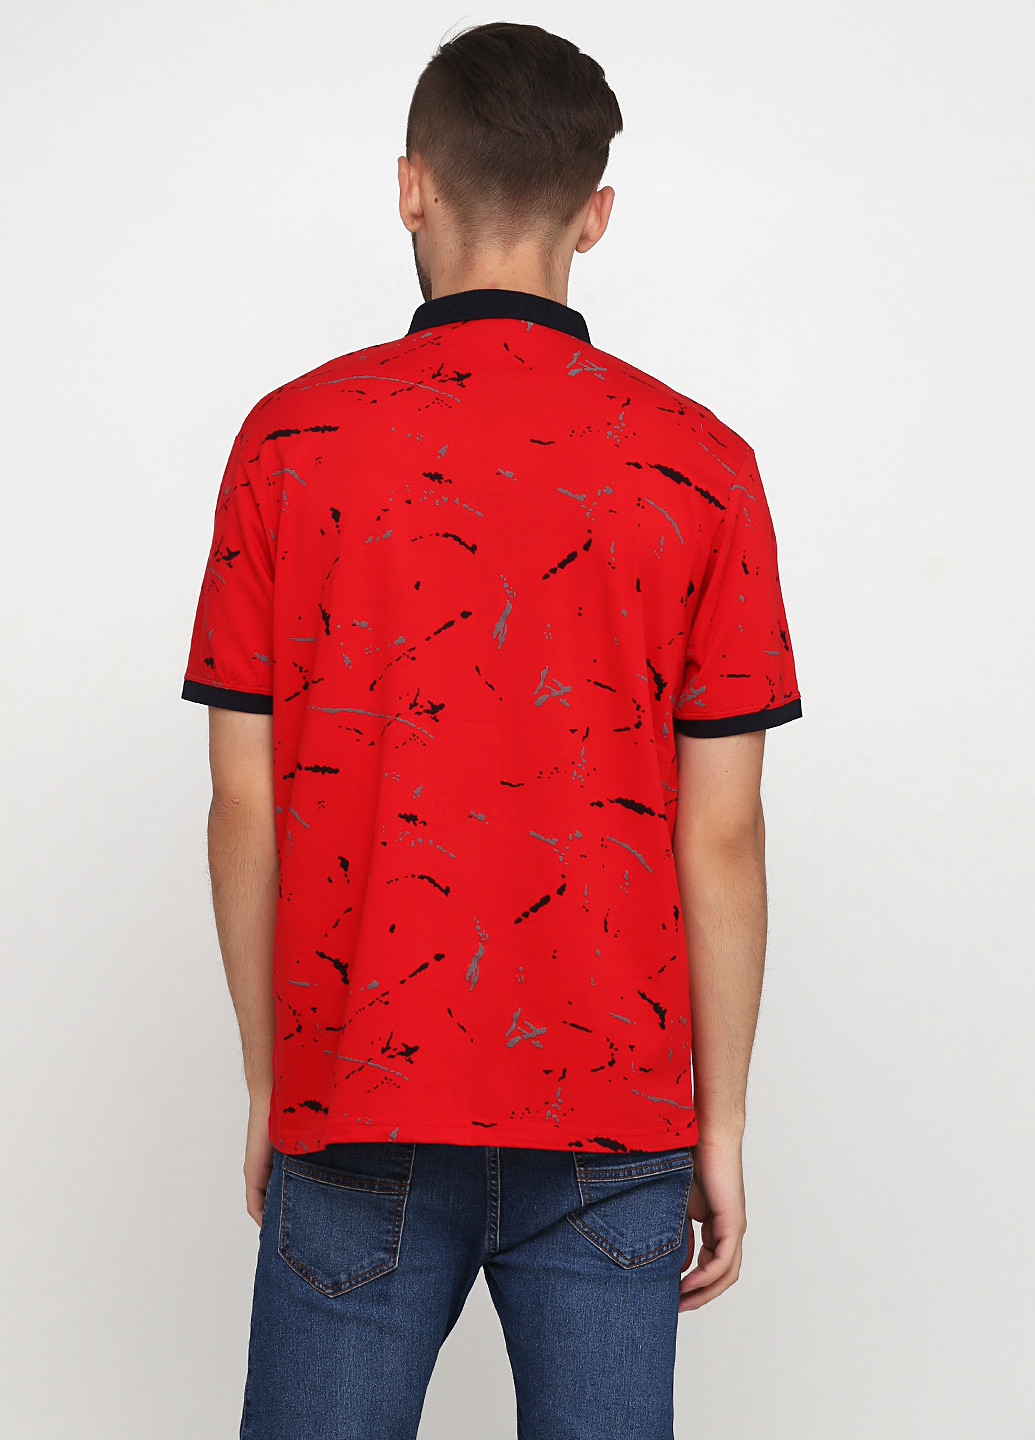 Красная футболка-поло для мужчин Madu с абстрактным узором